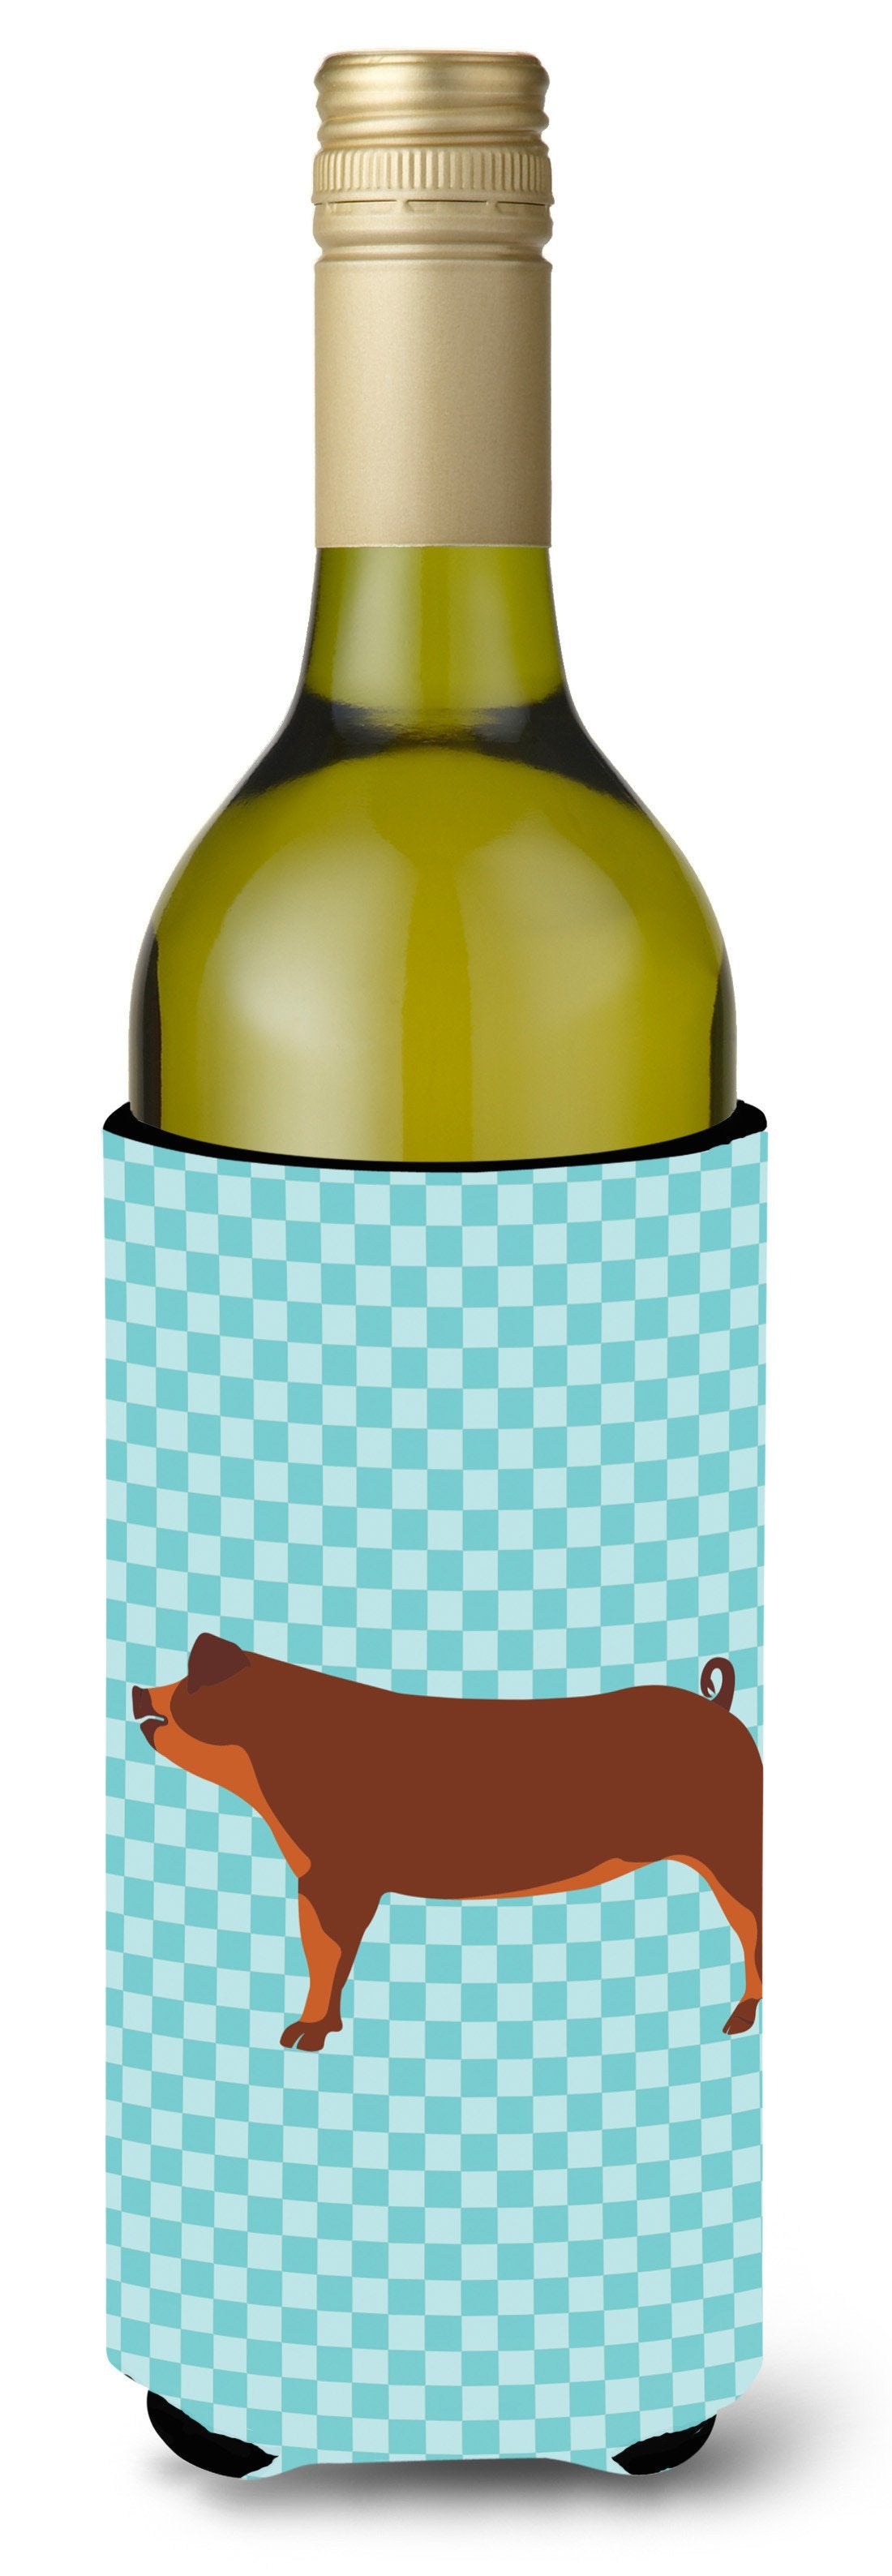 Duroc Pig Blue Check Wine Bottle Beverge Insulator Hugger BB8116LITERK by Caroline's Treasures